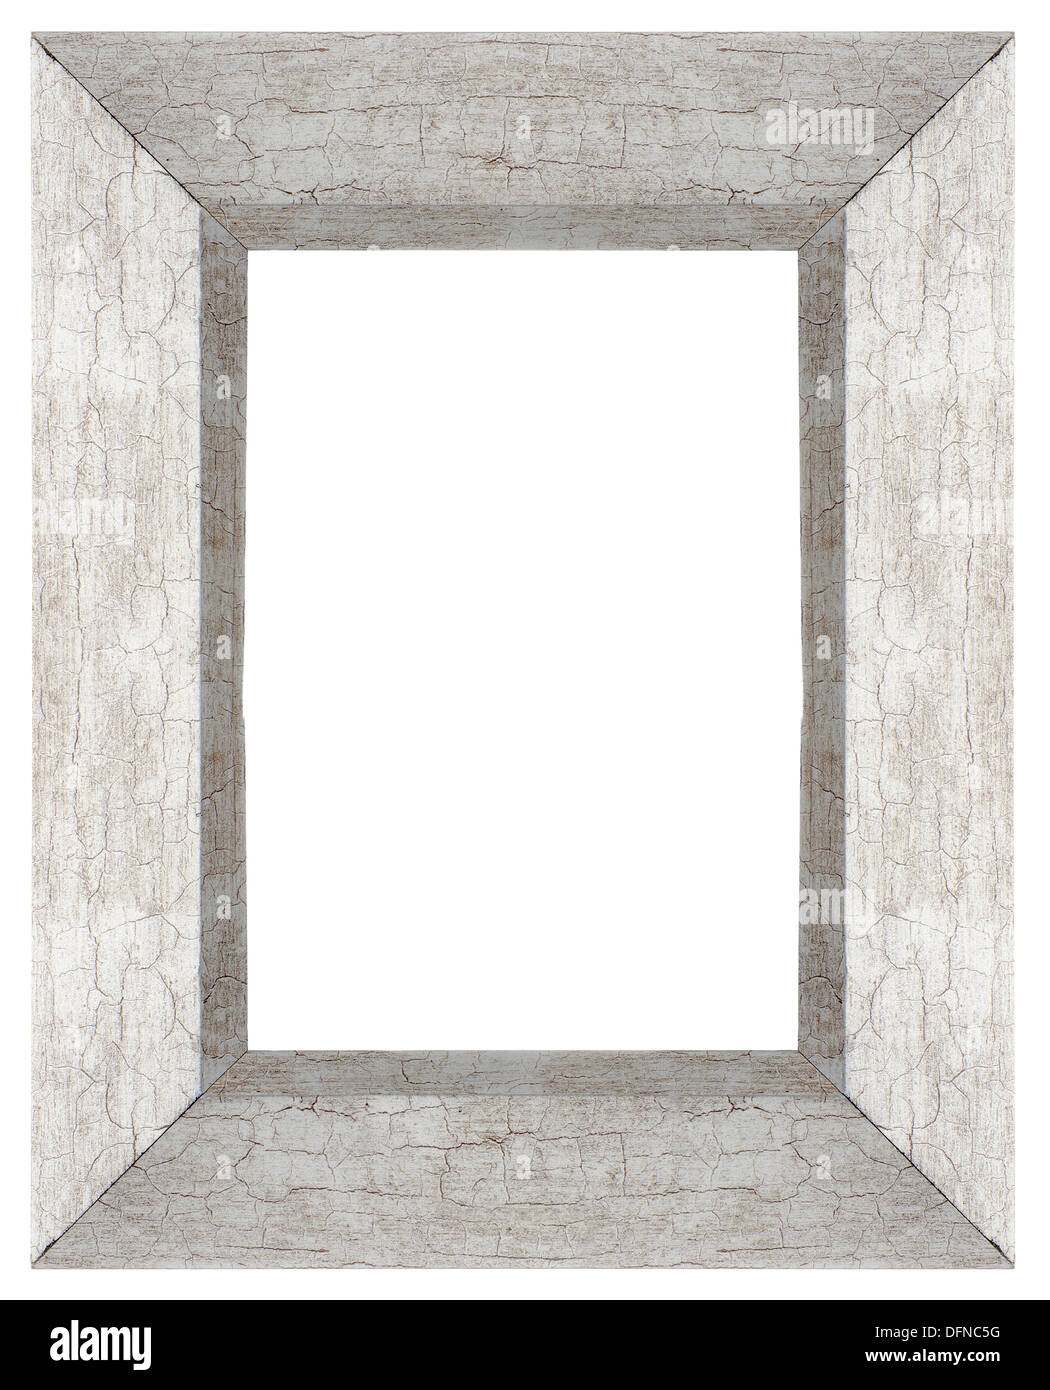 Stylish Silver Frame isolated on white background. Stock Photo